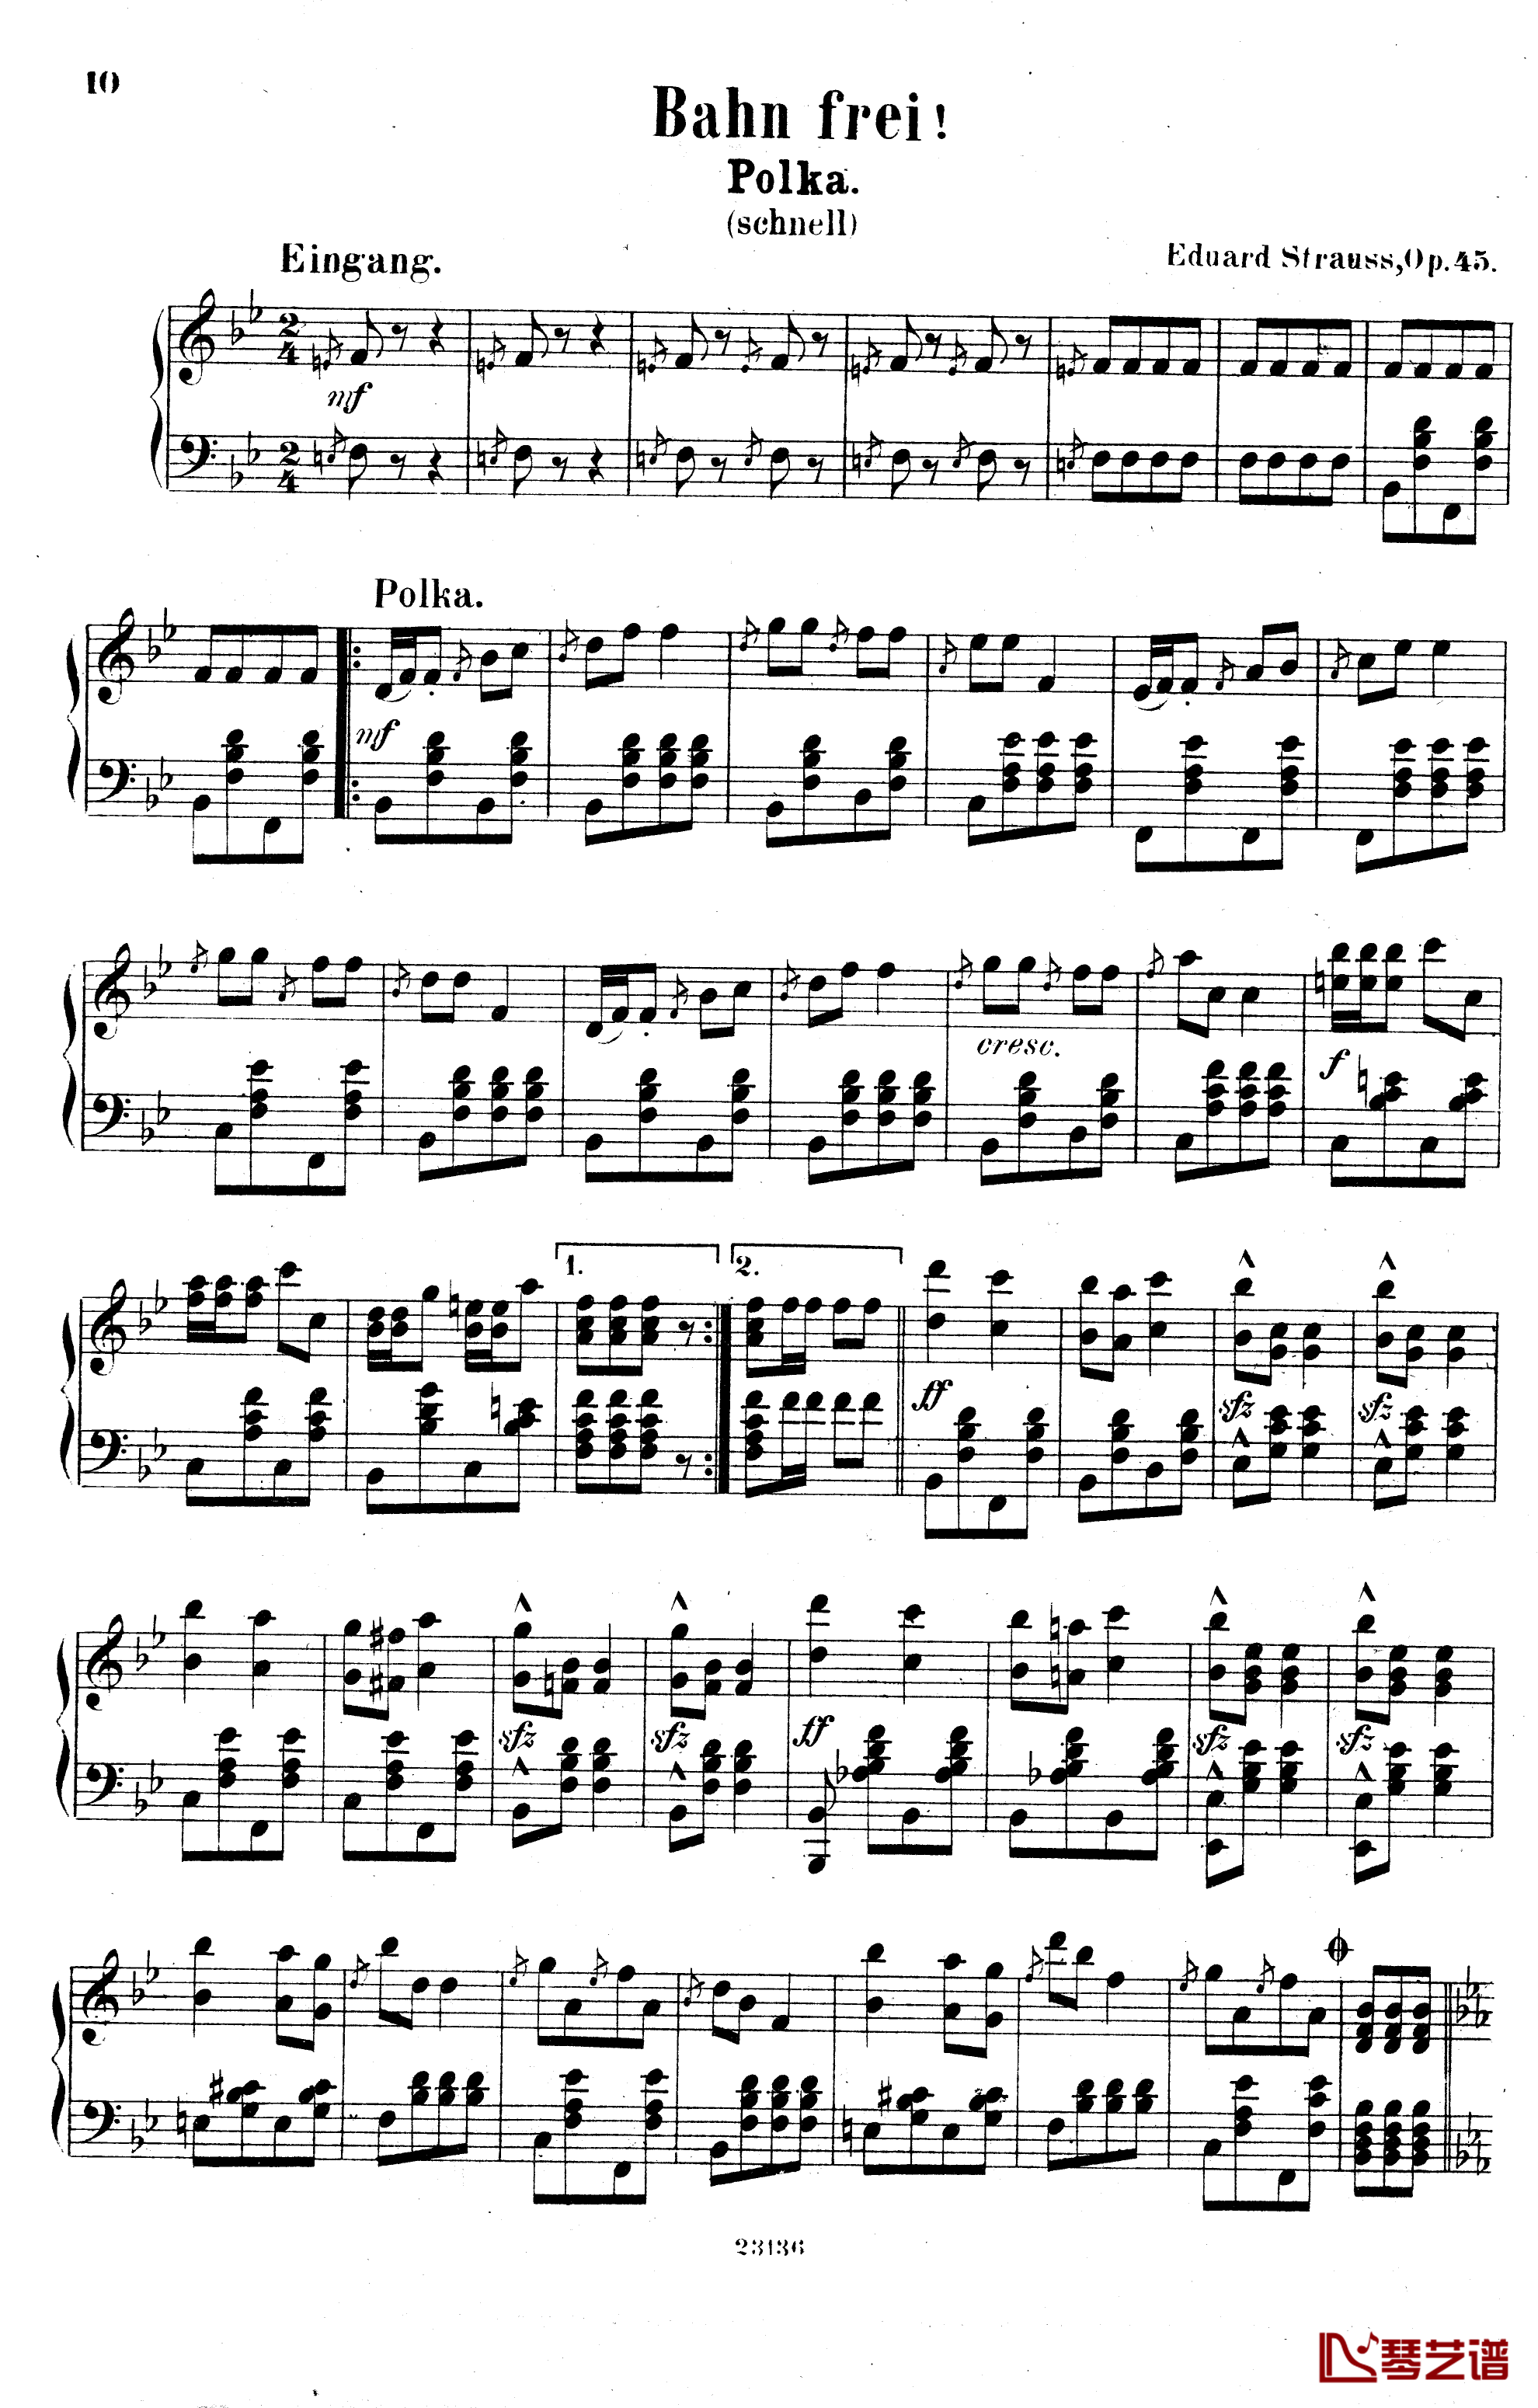  畅通无阻快速波尔卡  Op.45钢琴谱-爱德华 施特劳斯1